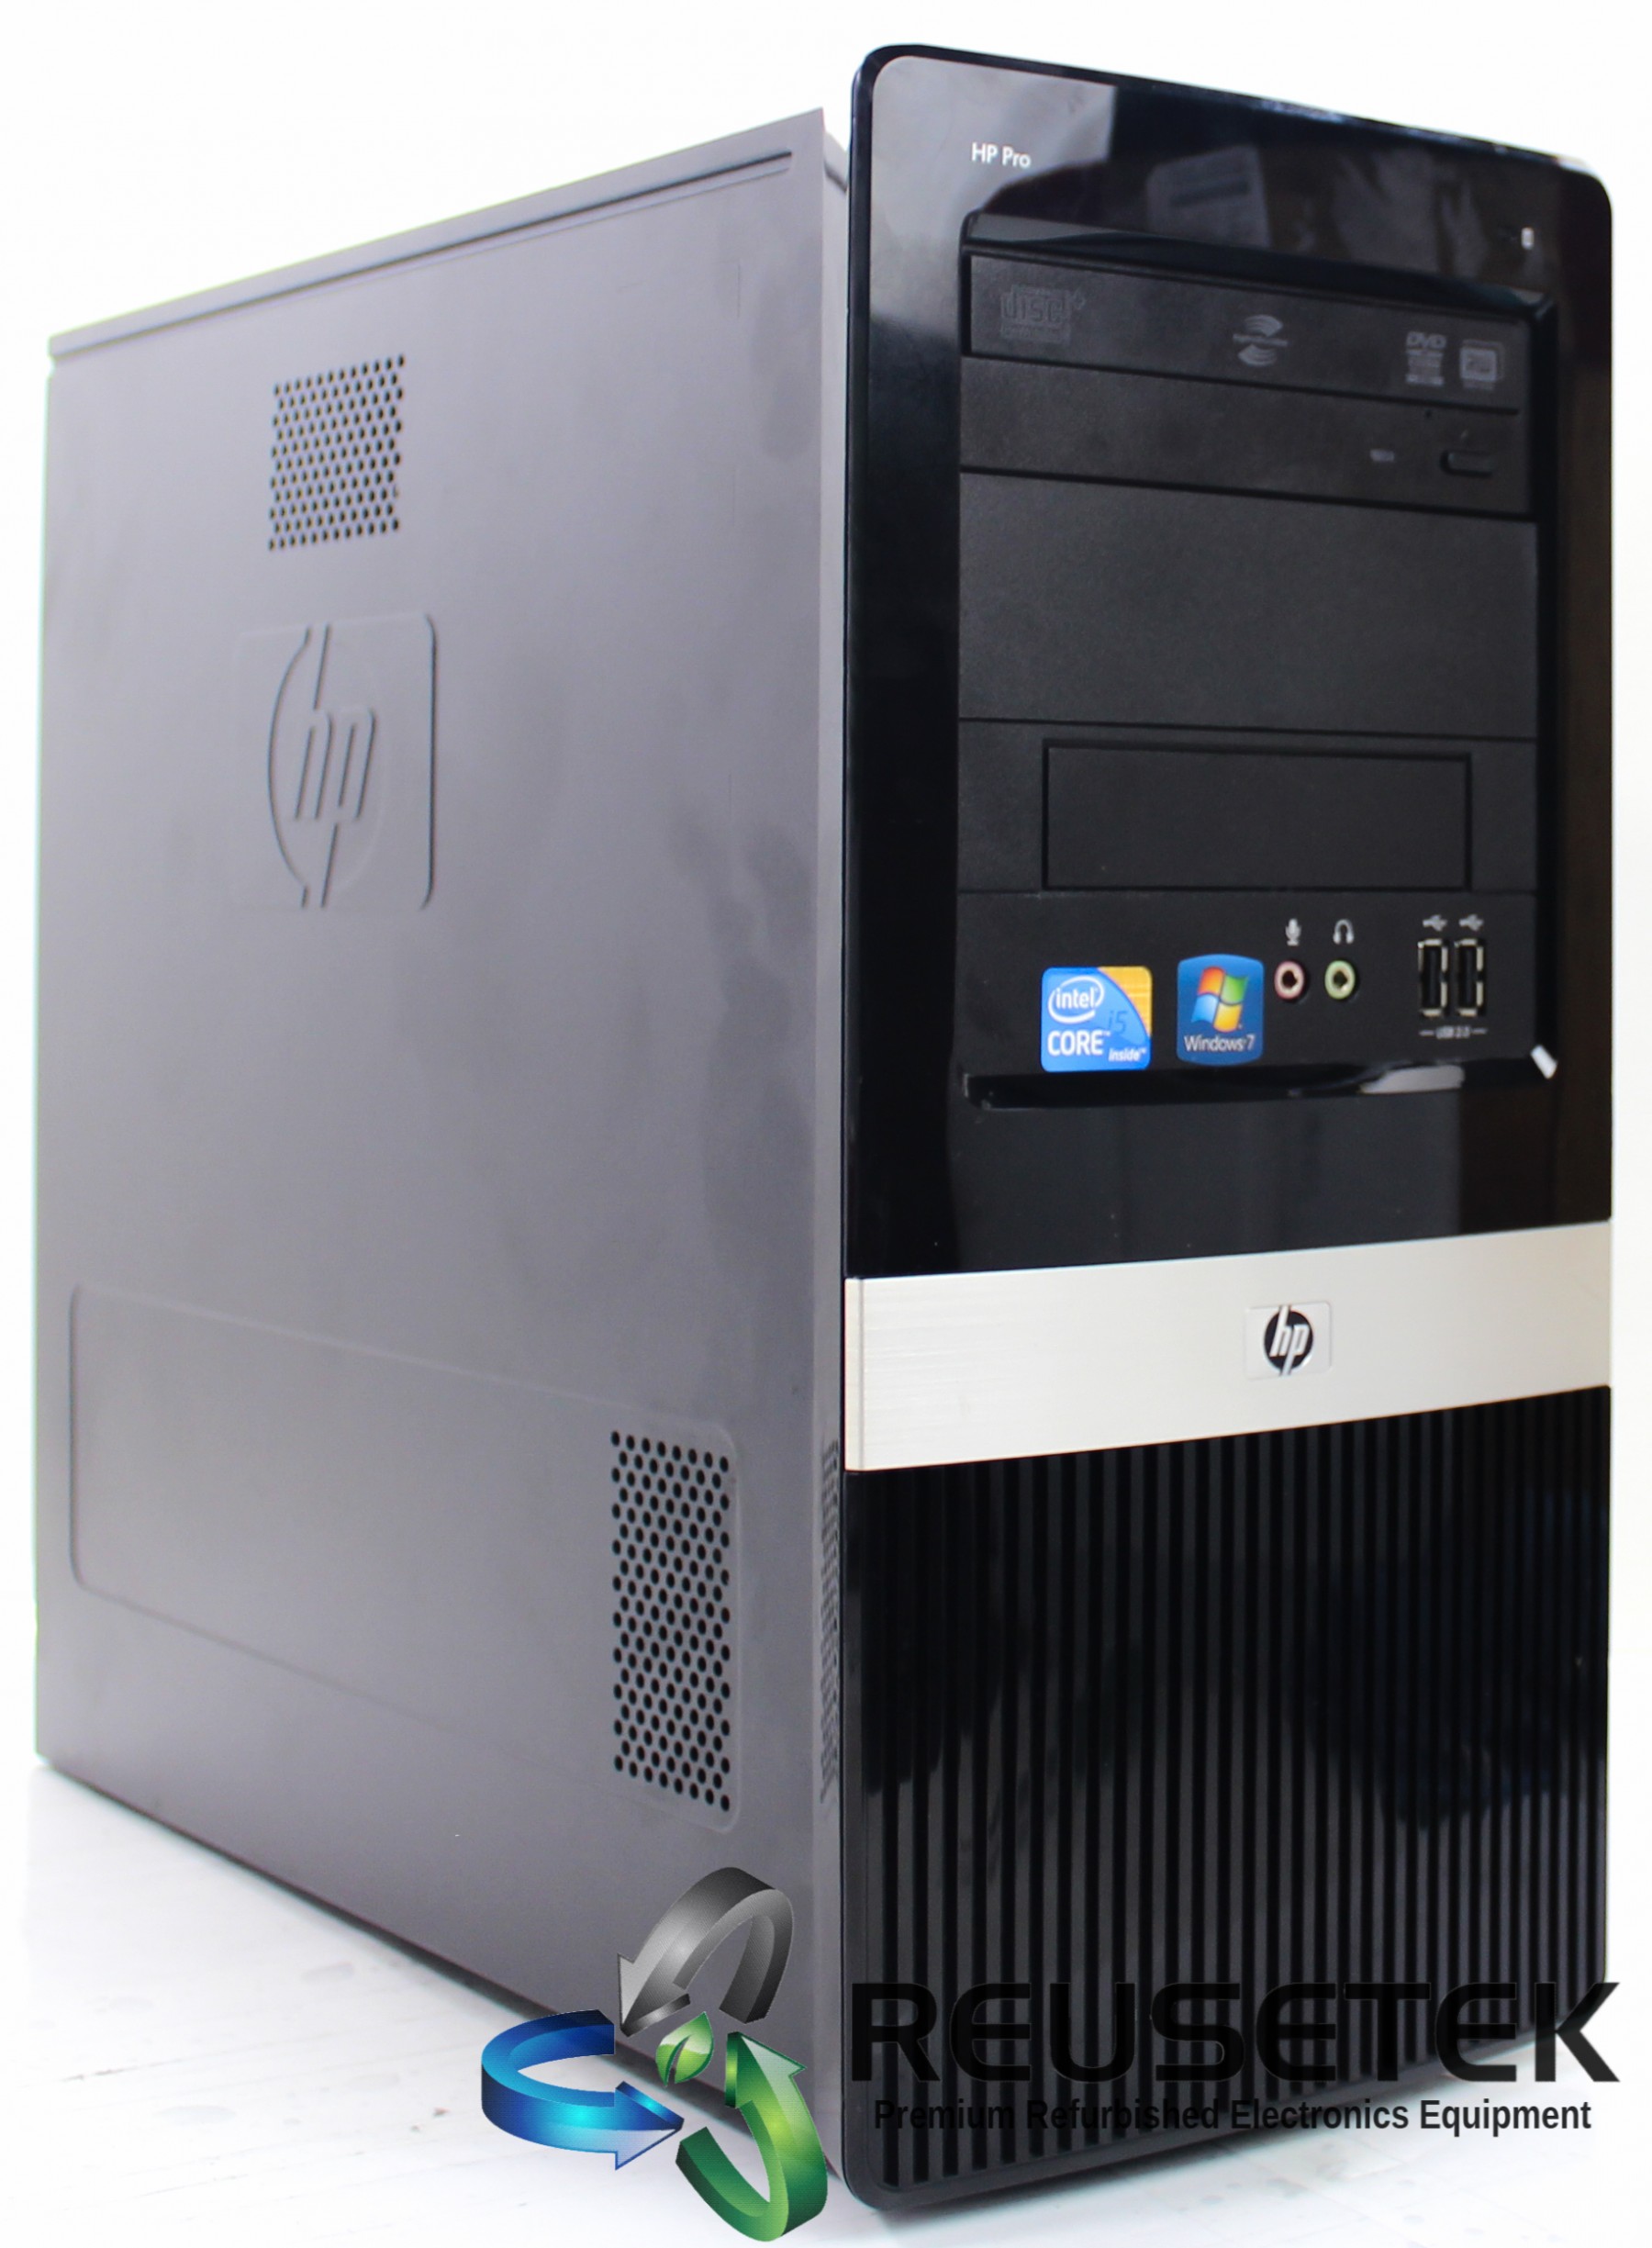 500031084-HP Pro 3130 MT Desktop PC-image